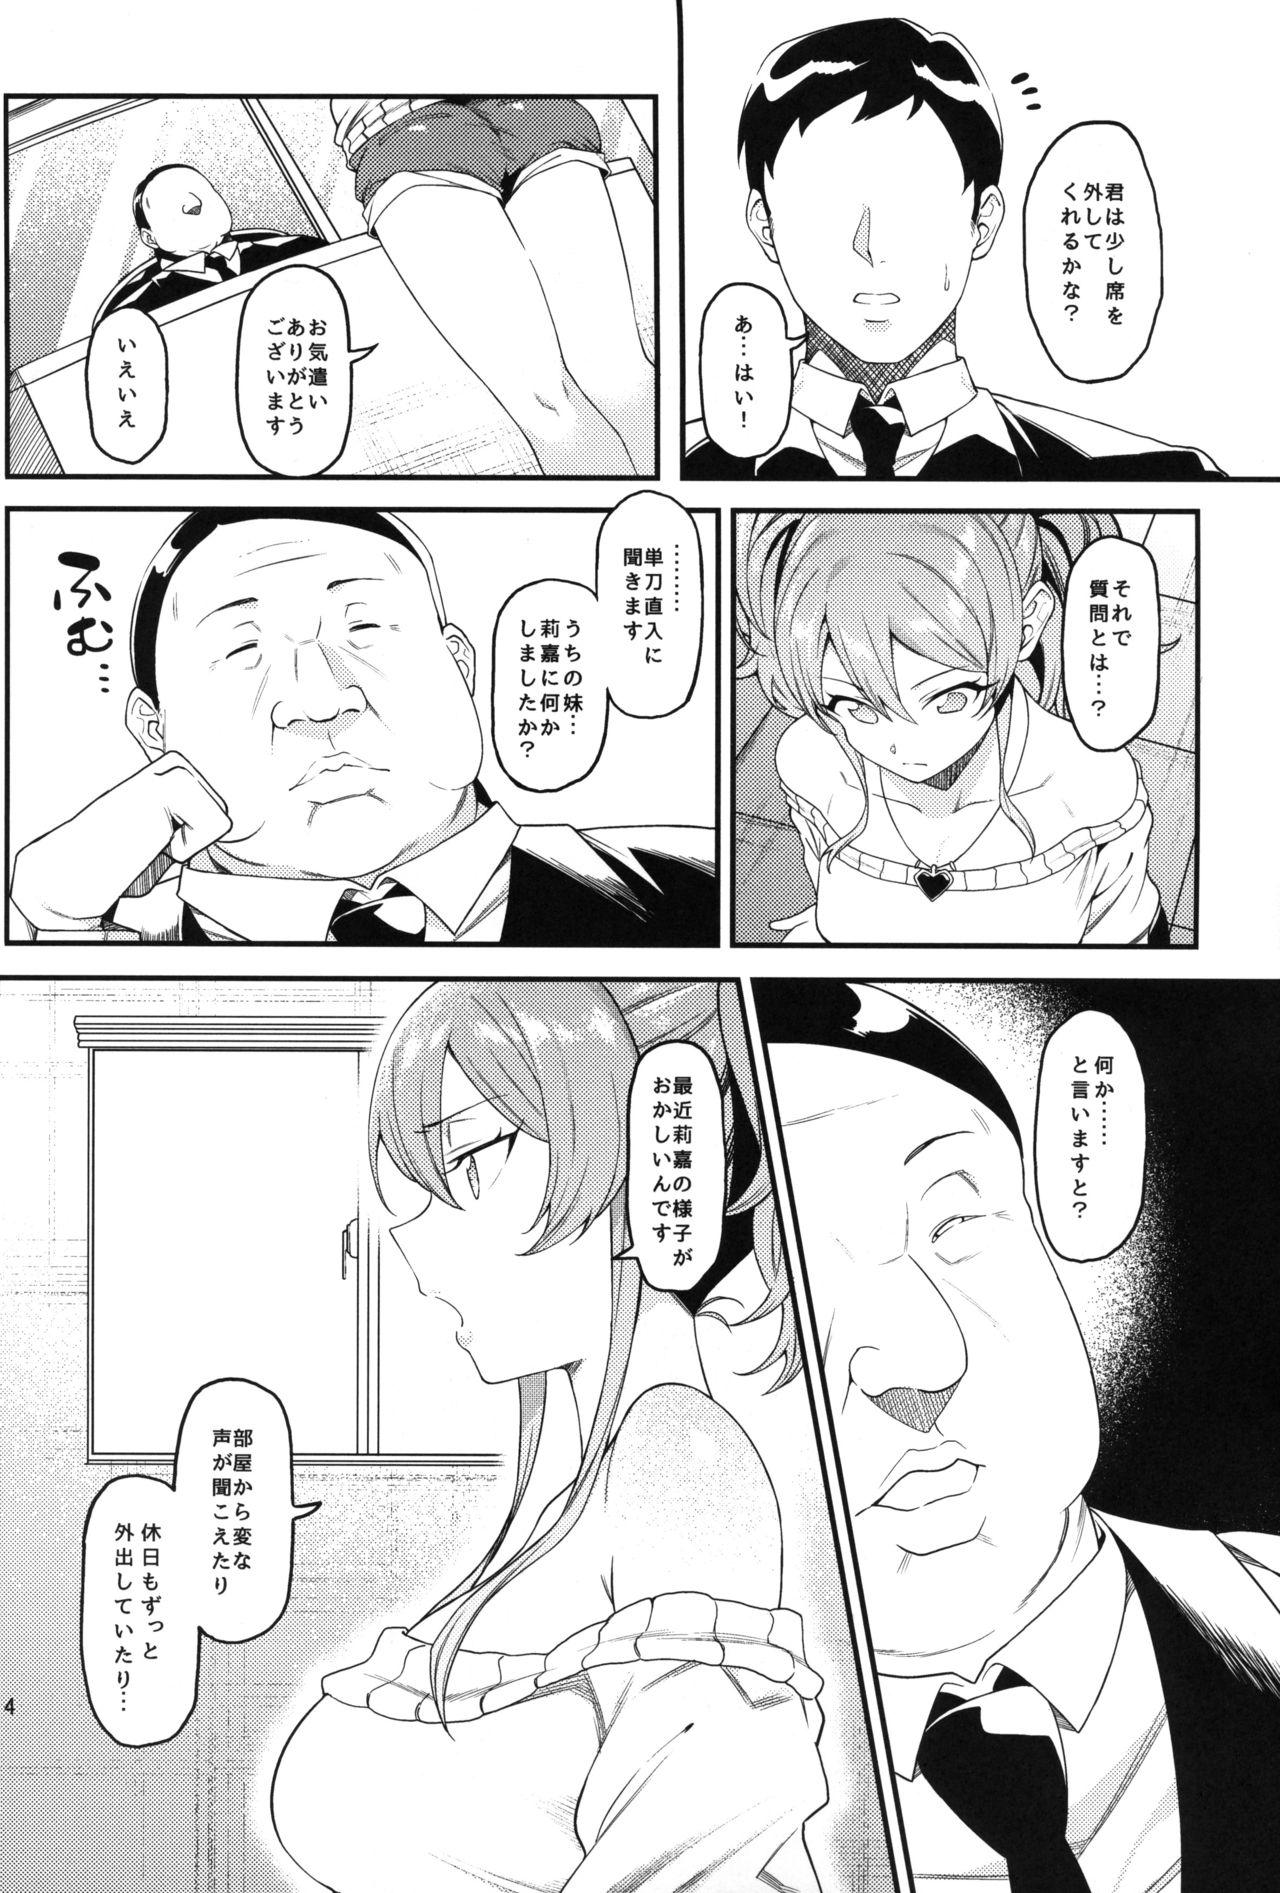 Woman Fucking Rika, Shimai de Issho ni Mootto Otona ni Shiteageyou. - The idolmaster Enema - Page 5